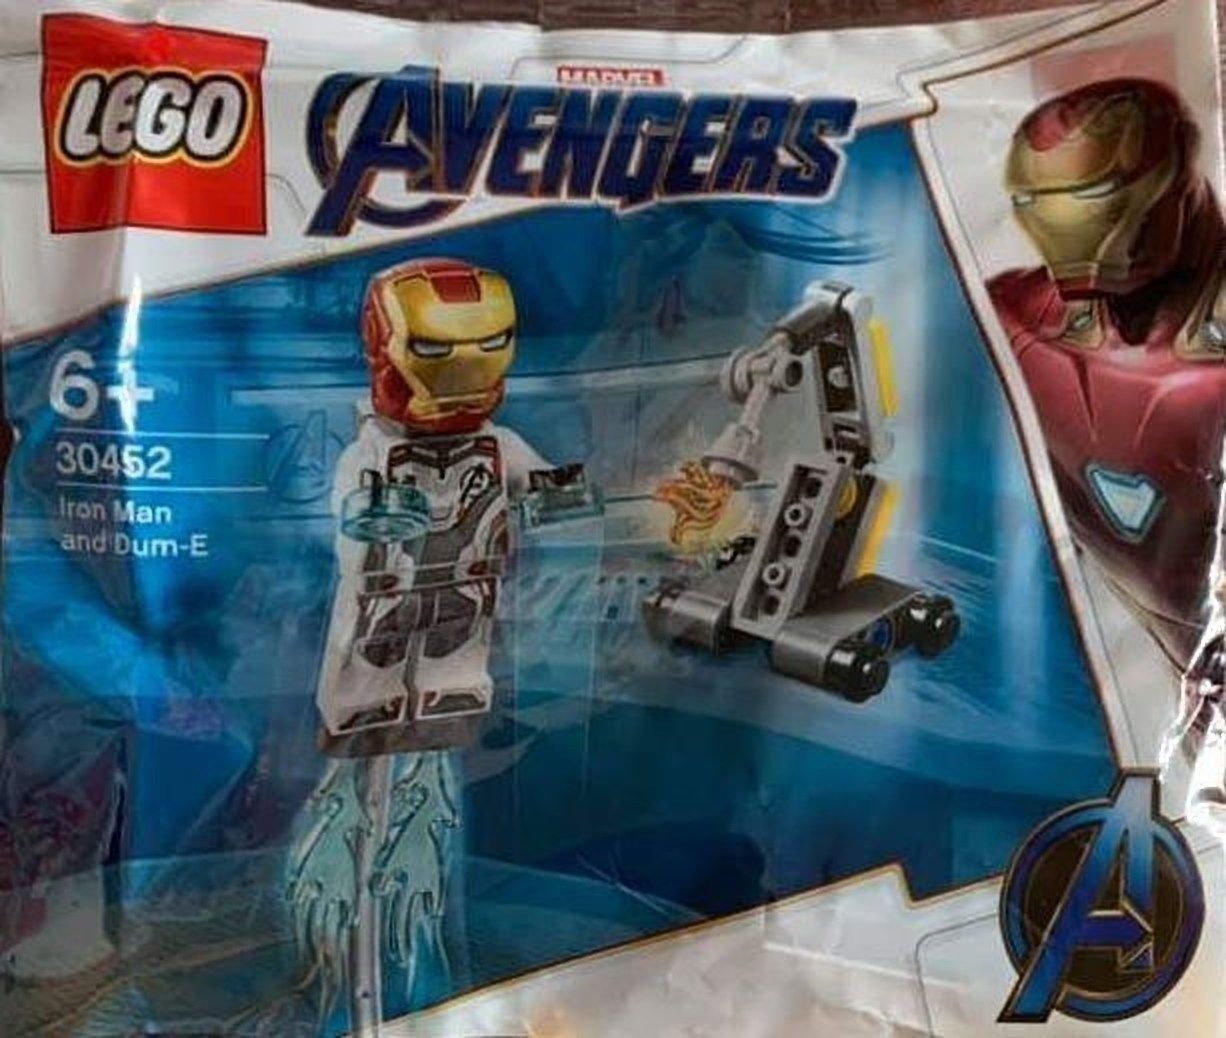 Iron Man toy